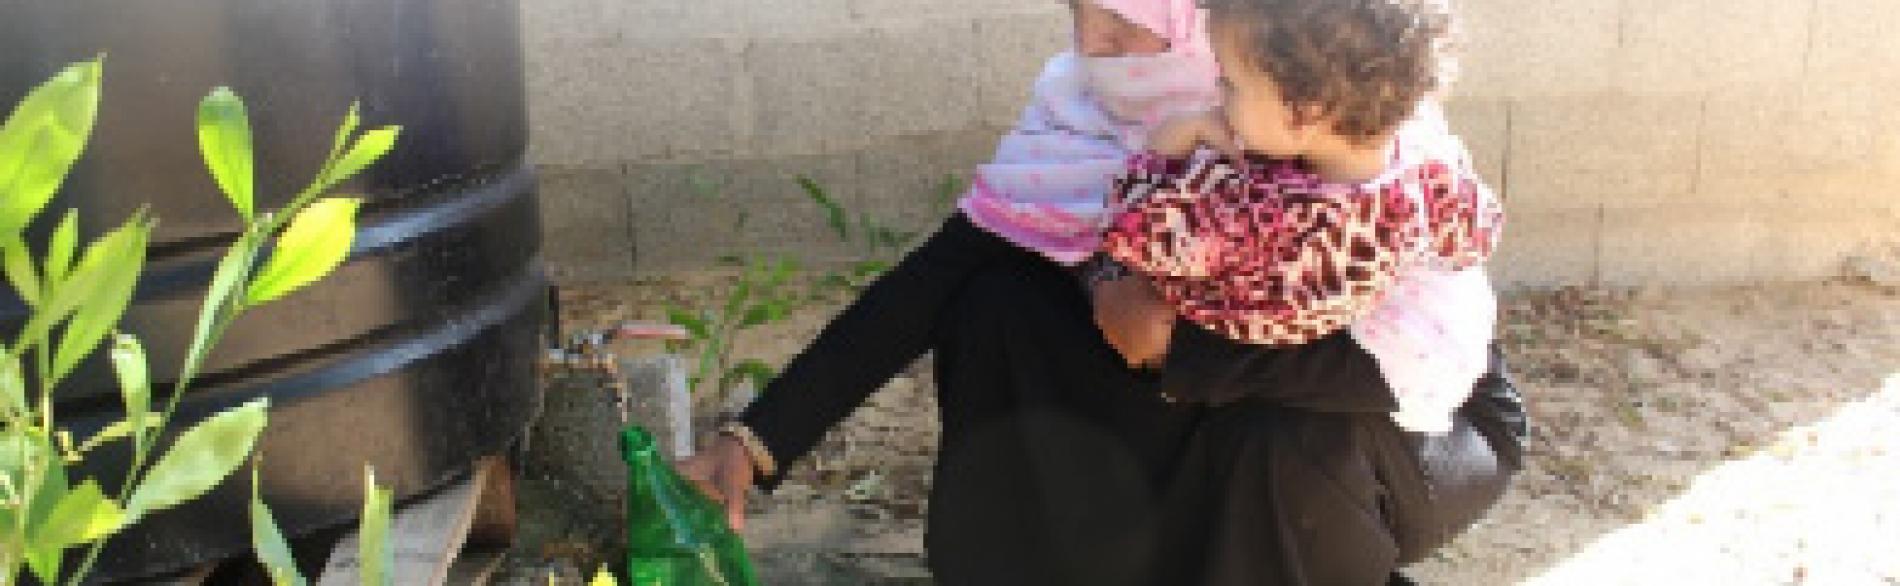 منى وهي تملأ زجاجة من المياه غير الصالحة للشرب من خزان في ساحة منزلها. © - تصوير منظمة أوكسفام